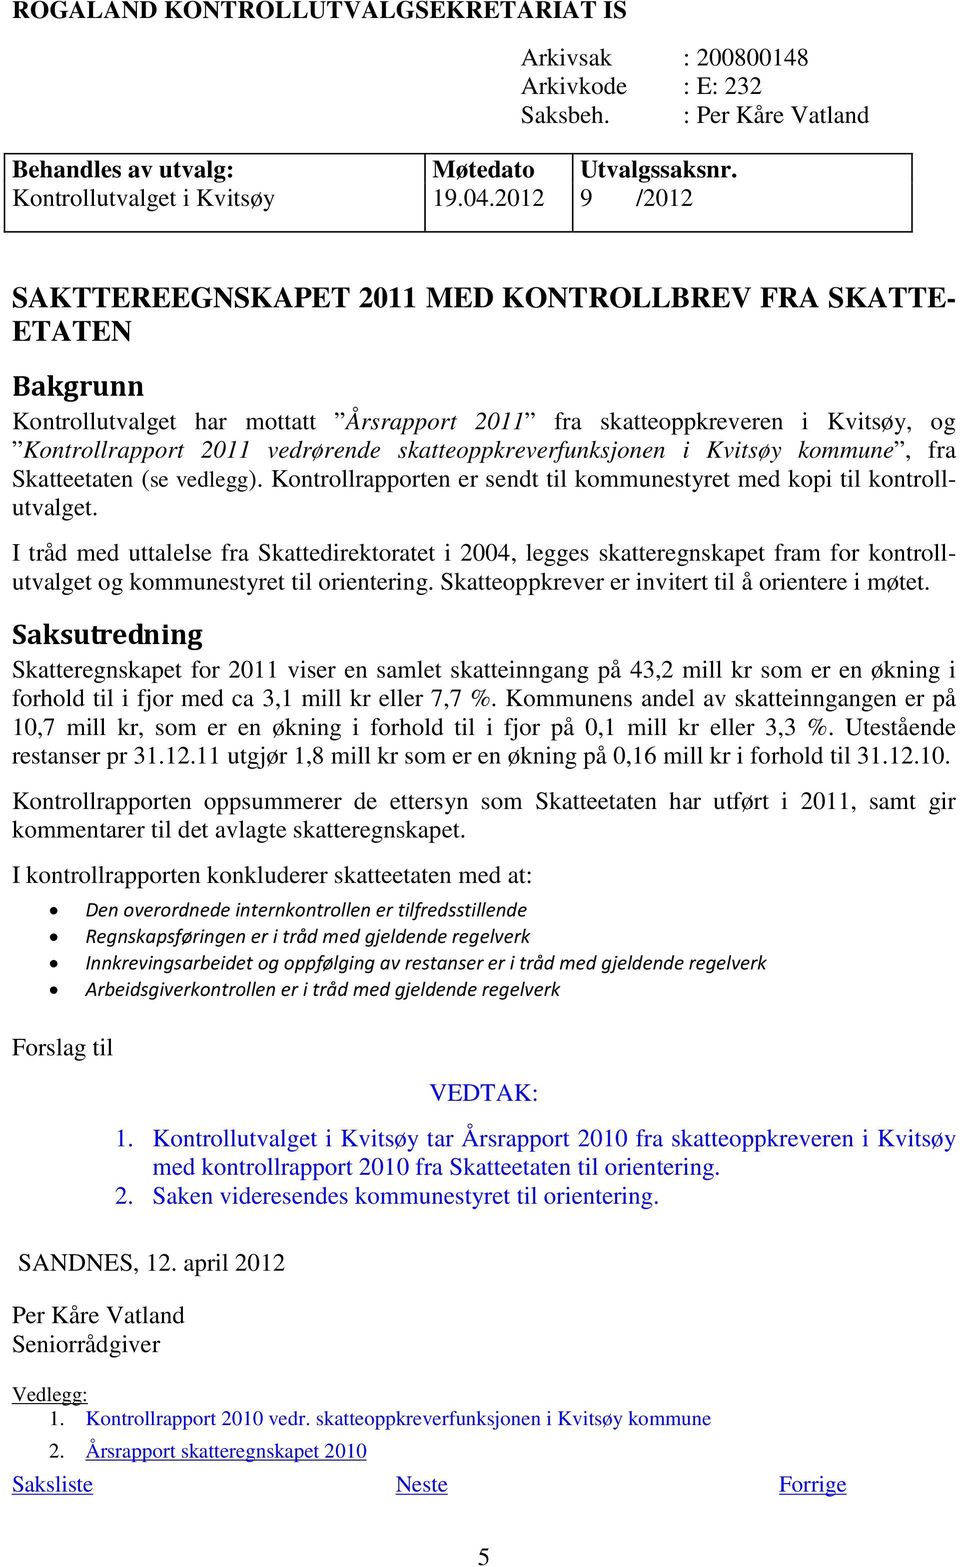 skatteoppkreverfunksjonen i Kvitsøy kommune, fra Skatteetaten (se vedlegg). Kontrollrapporten er sendt til kommunestyret med kopi til kontrollutvalget.